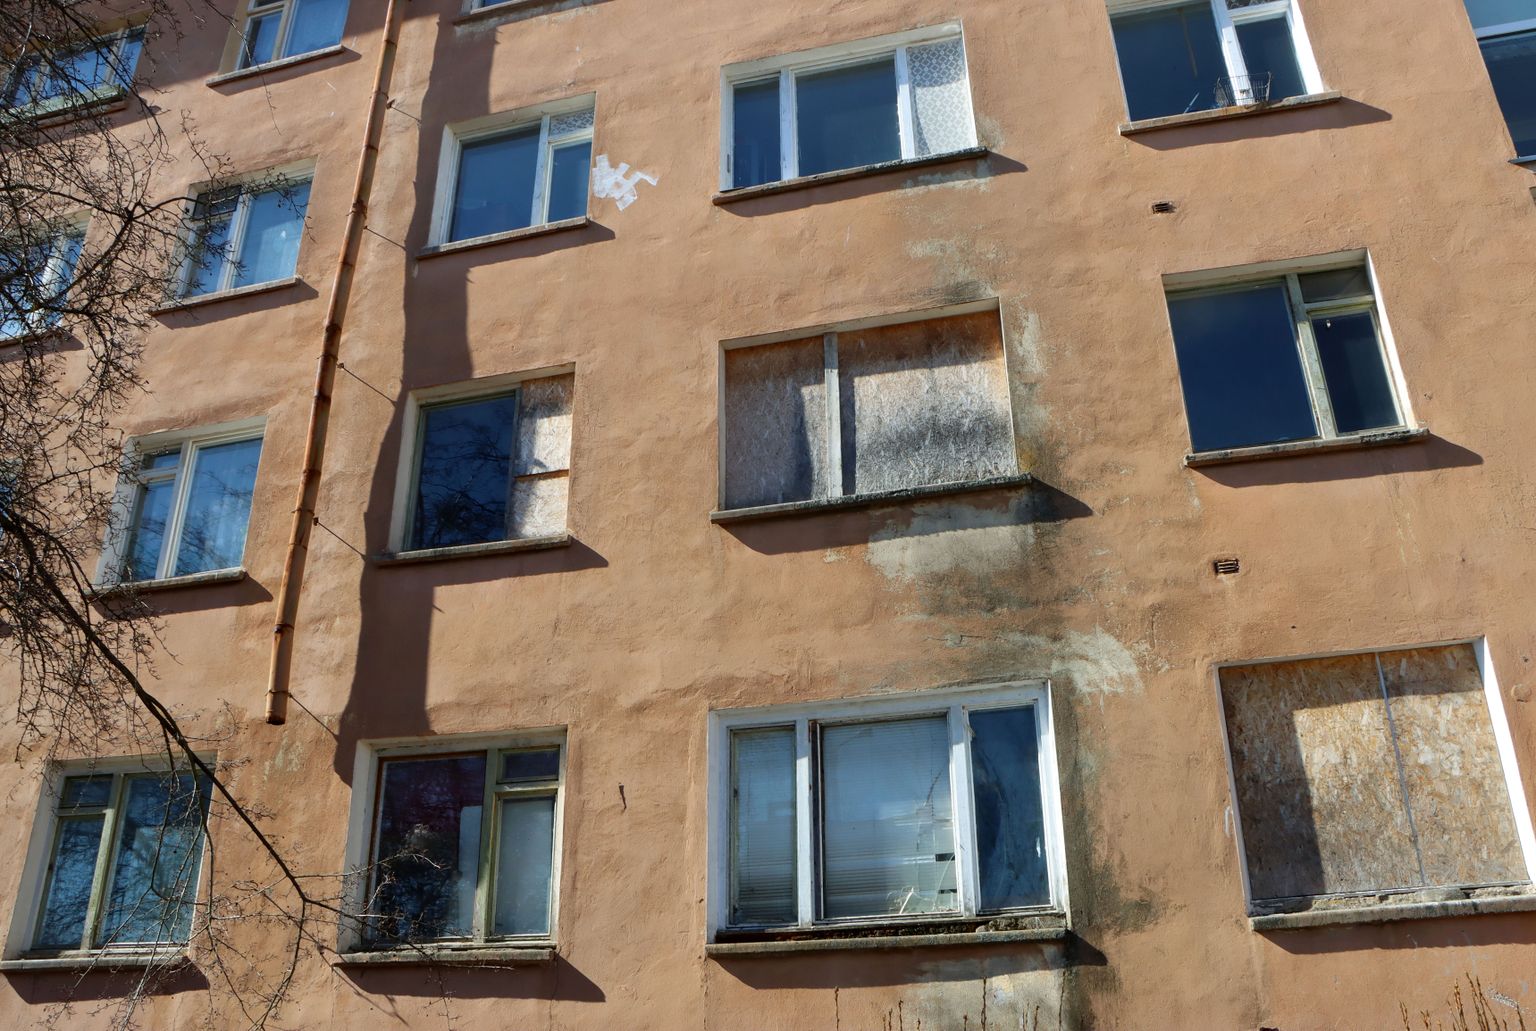 Это фото квартирного дома на улице Олеви в Кохтла-Ярве сделано нынешней весной, по нему видно, что в некоторых пустующих квартирах даже выбиты окна, не говоря уж о плачевном состоянии самих квартир.